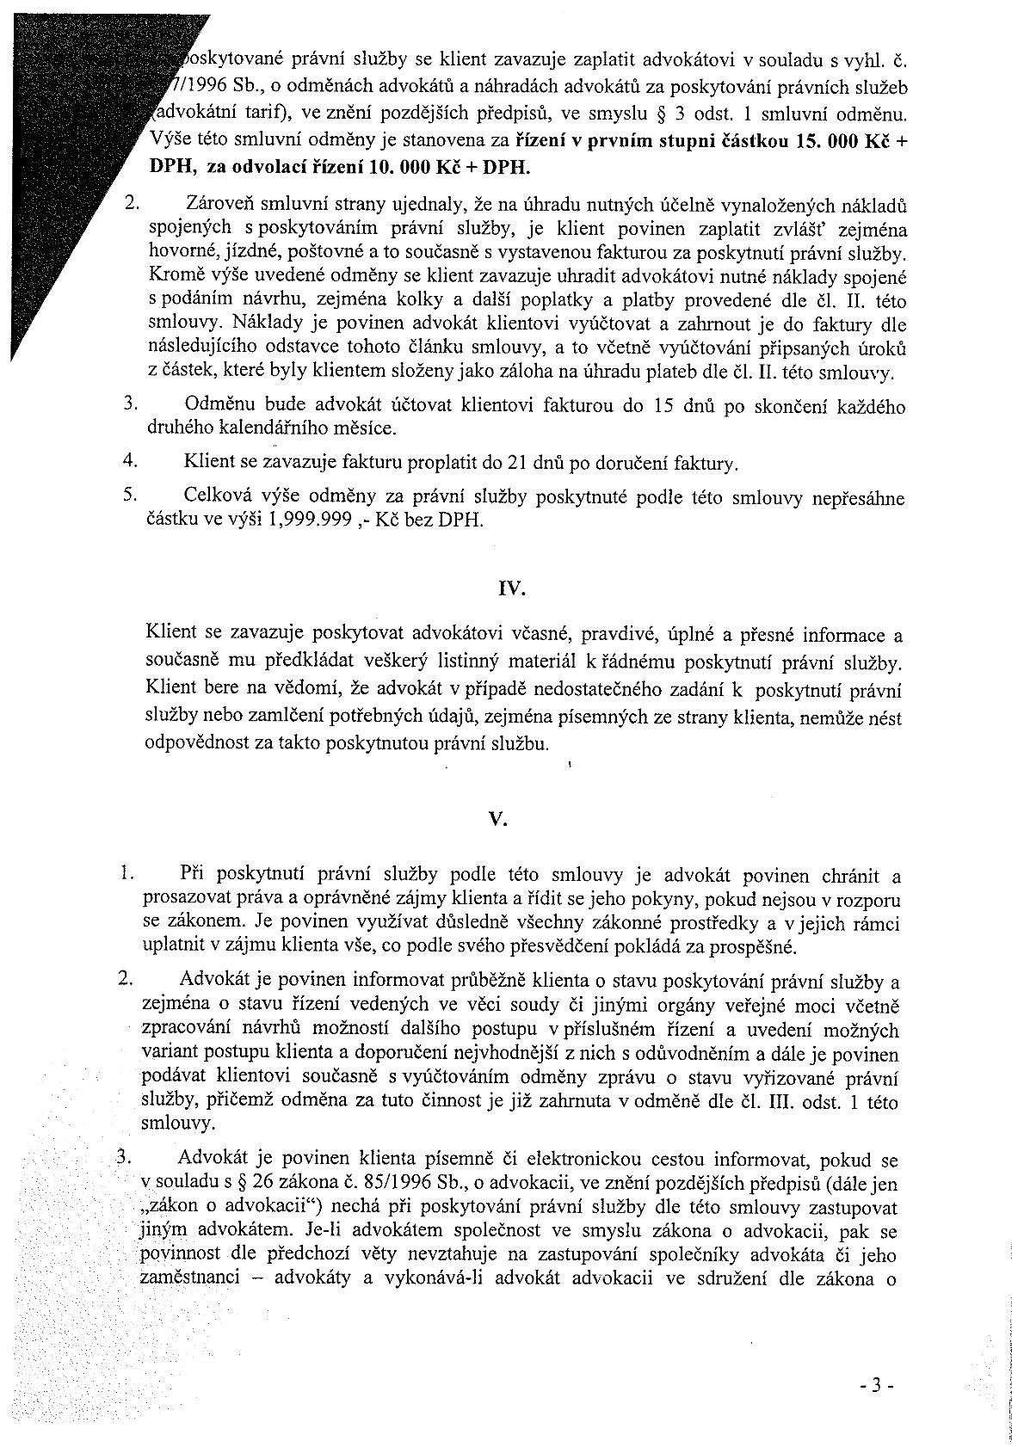 ' 35" " 2:5 oskytované právní služby se klient zavazuje zaplatit advokátovi v souladu s vyhl. č. '. _ í i. _5 / 1996 Sb.